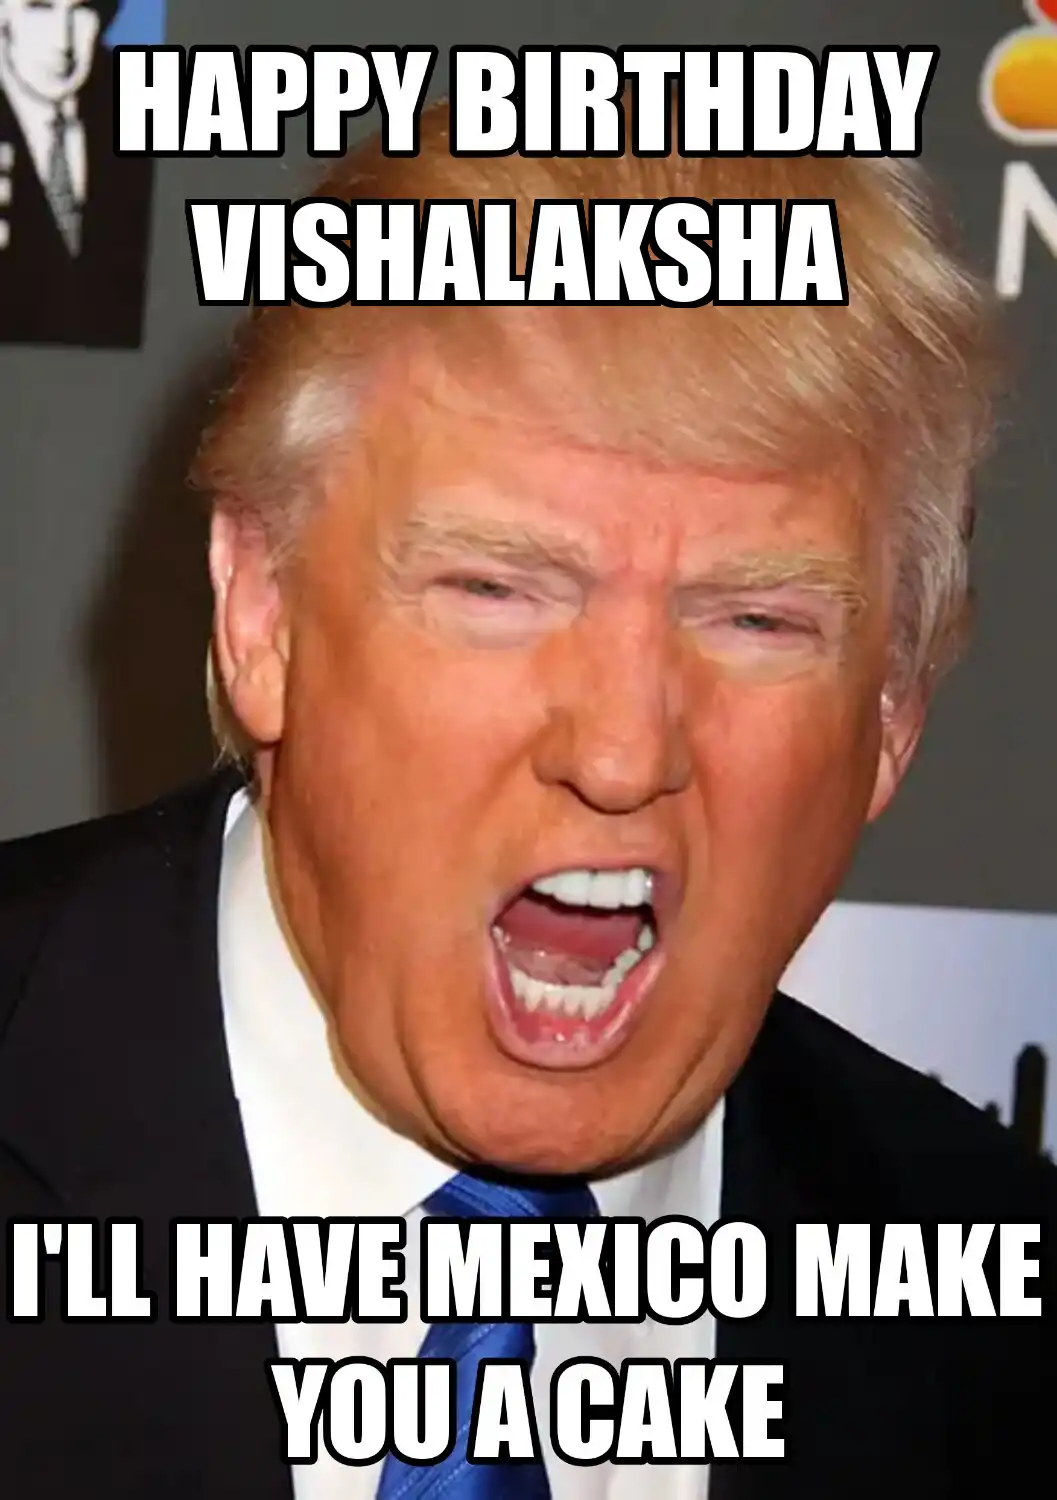 Happy Birthday Vishalaksha Mexico Make You A Cake Meme